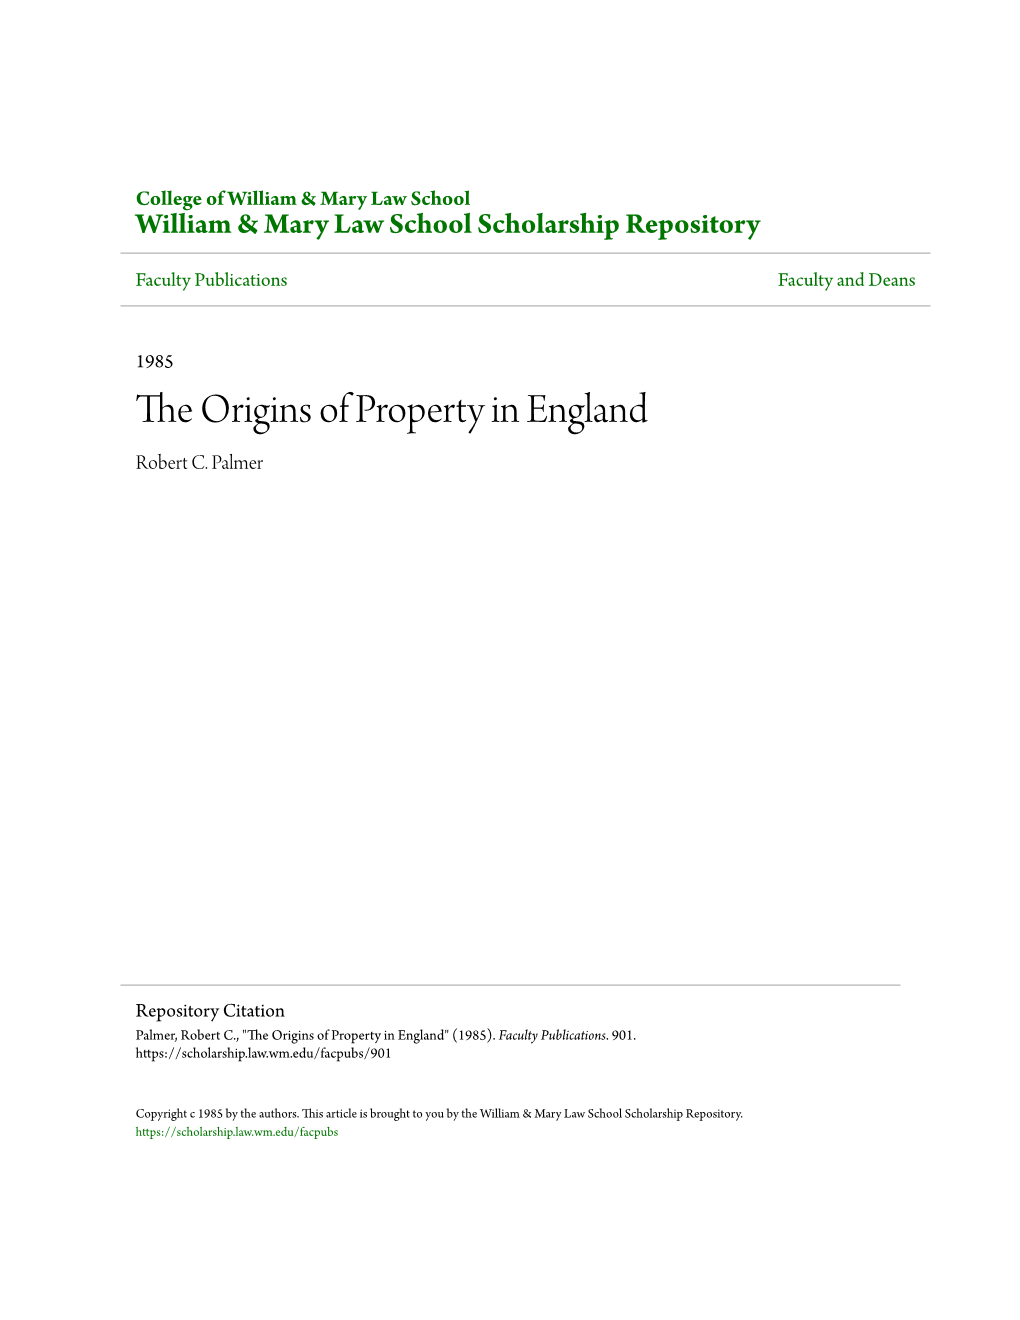 The Origins of Property in England Robert C